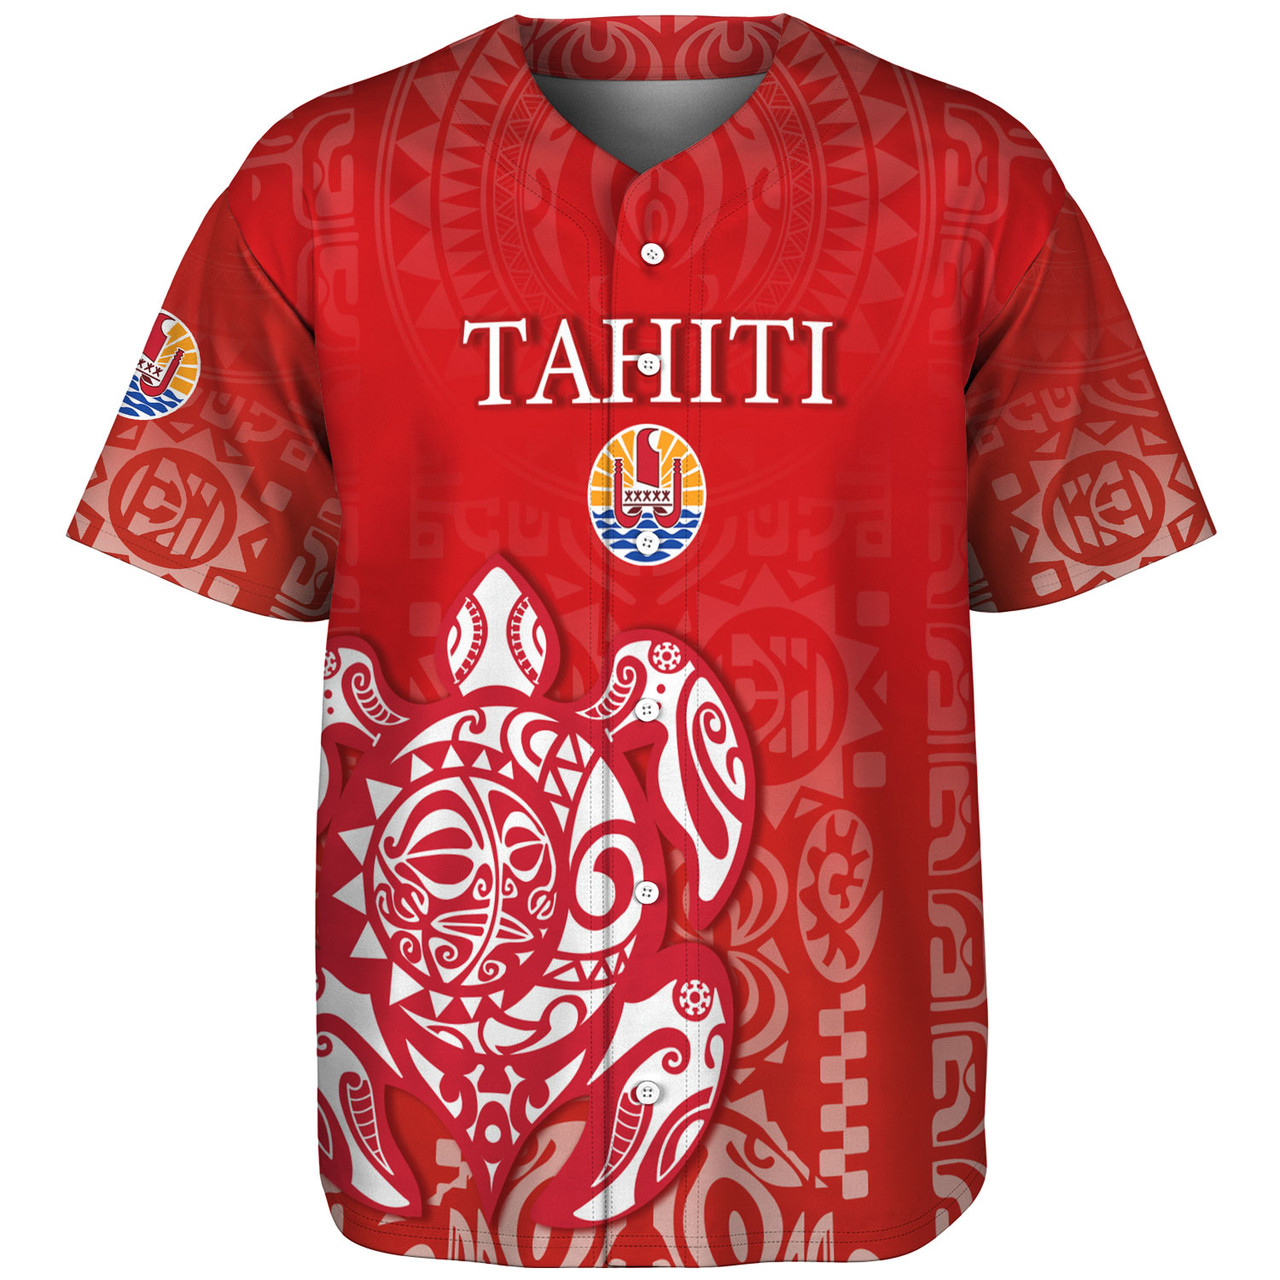 Tahiti Baseball Shirt Tahitian Tribal Tattoos Style